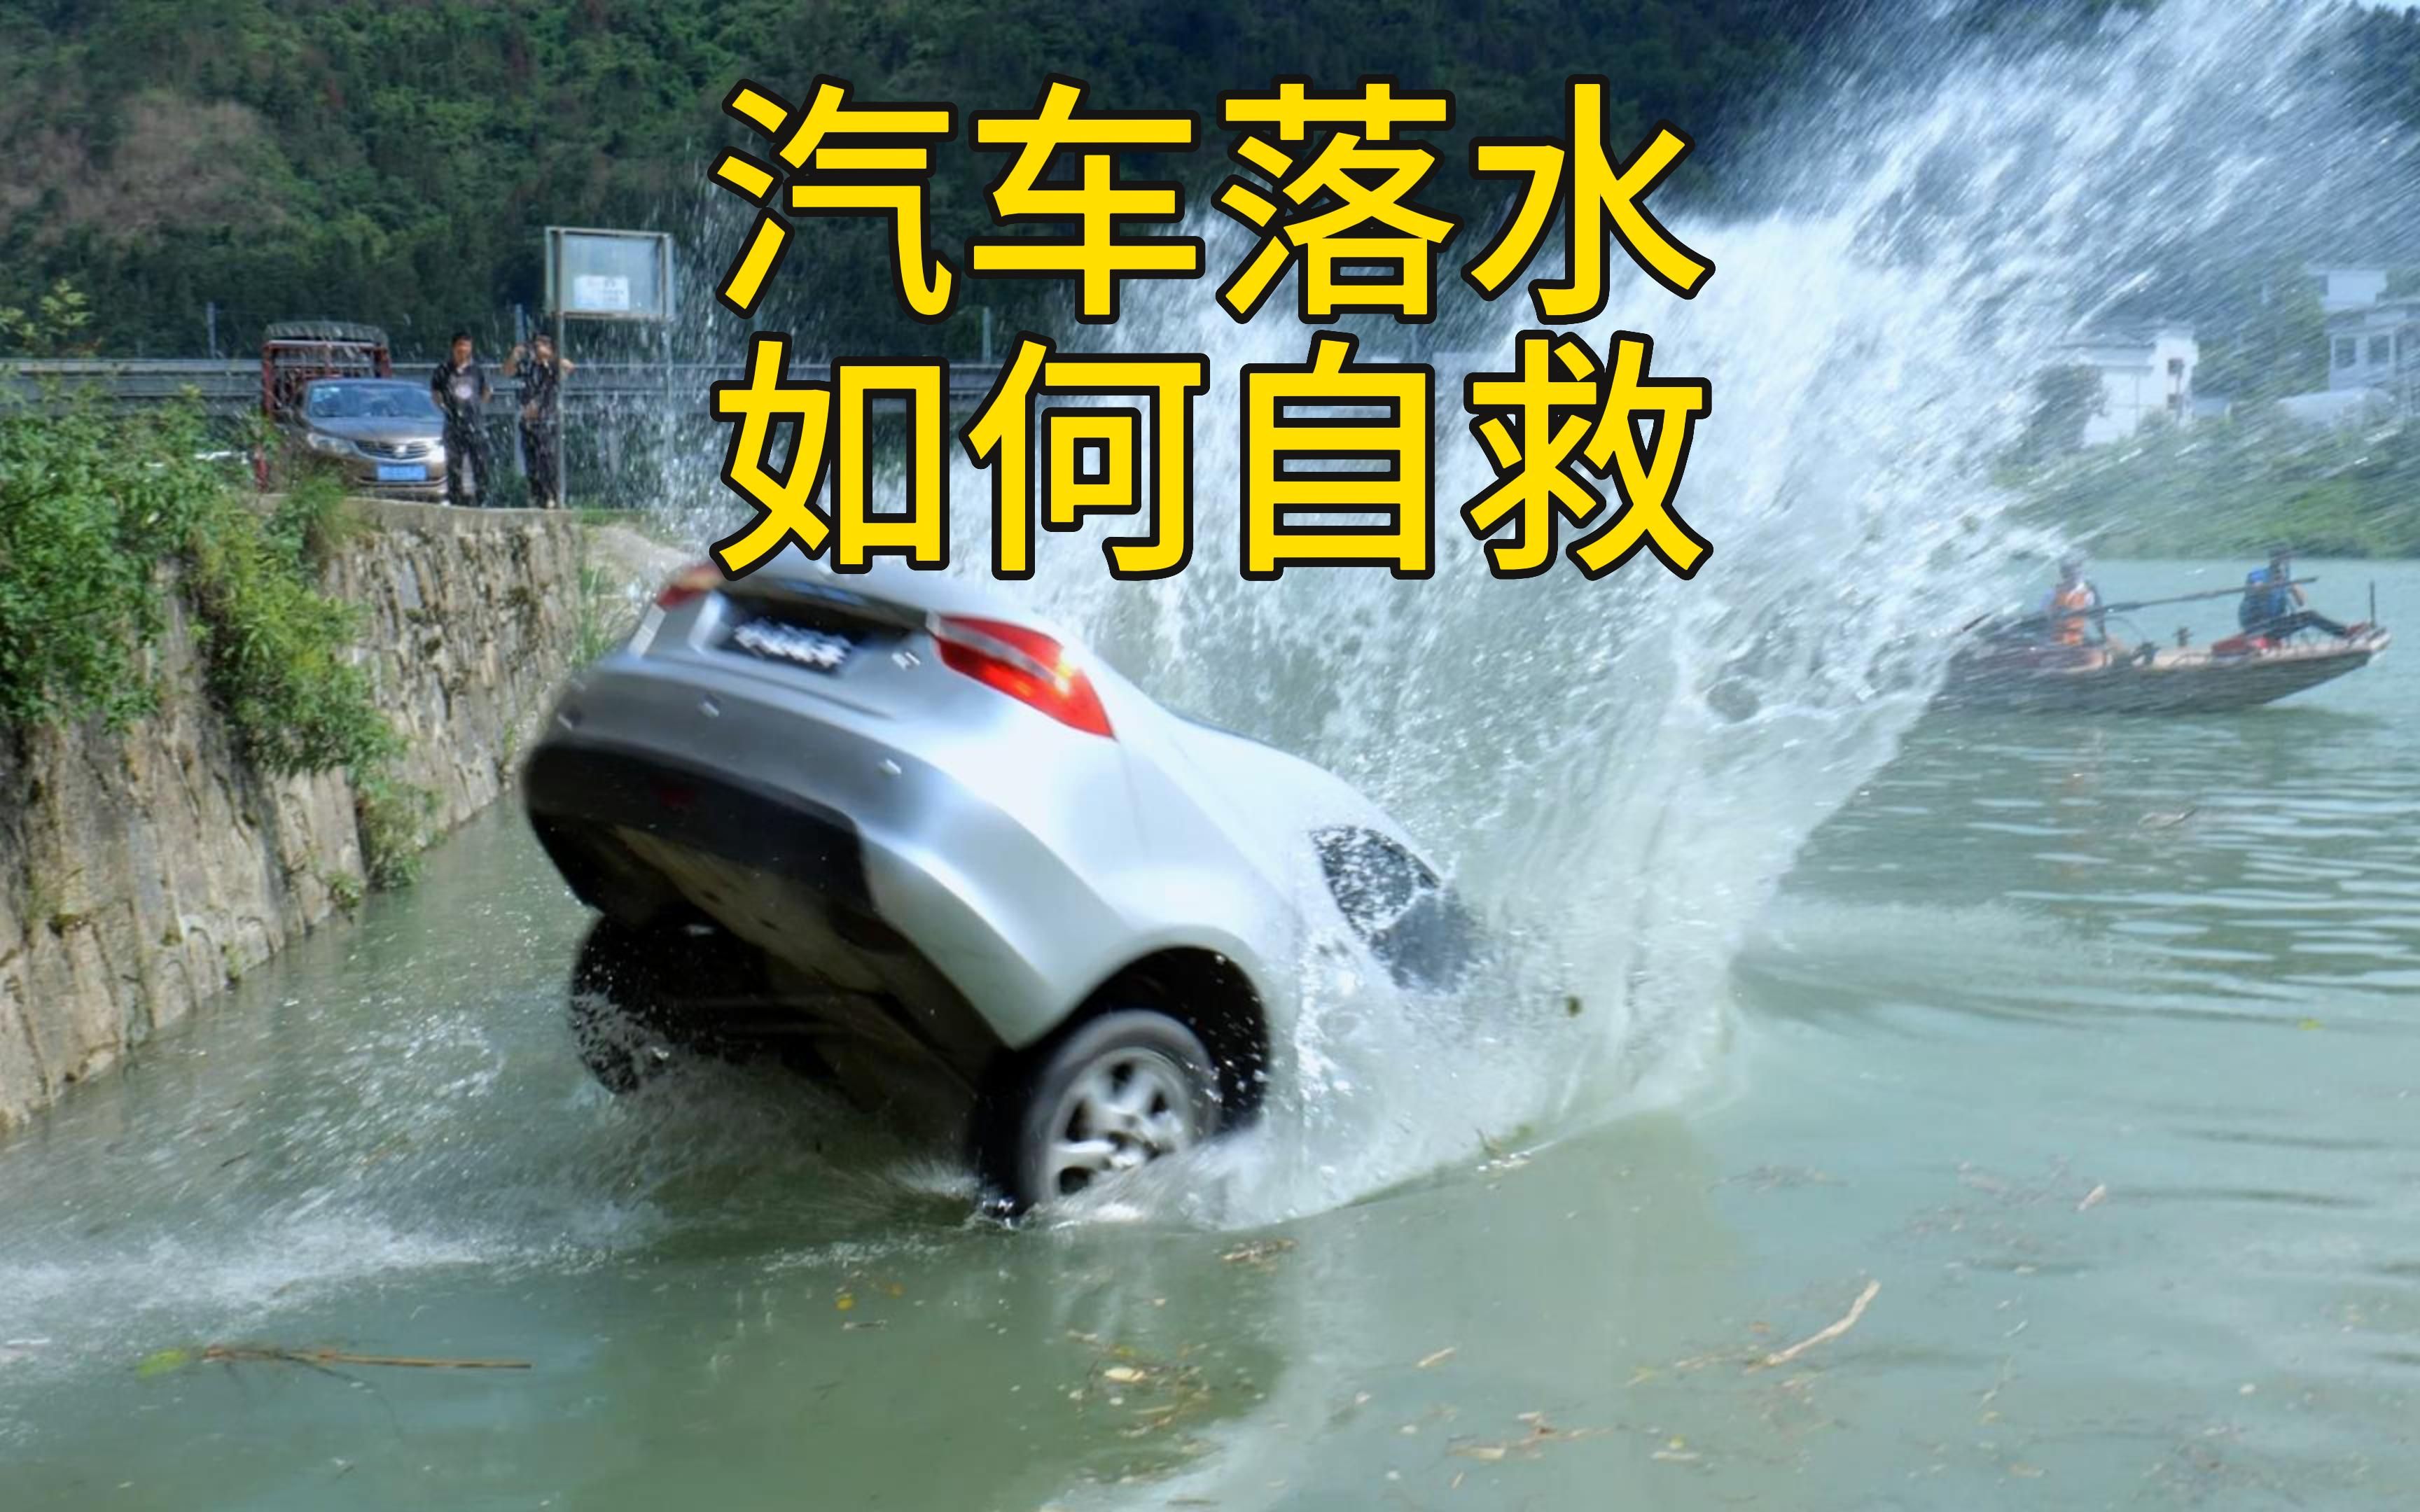 汽车意外落水，短短8秒沉入水中，这么短暂的机会我们如何才能抓的住